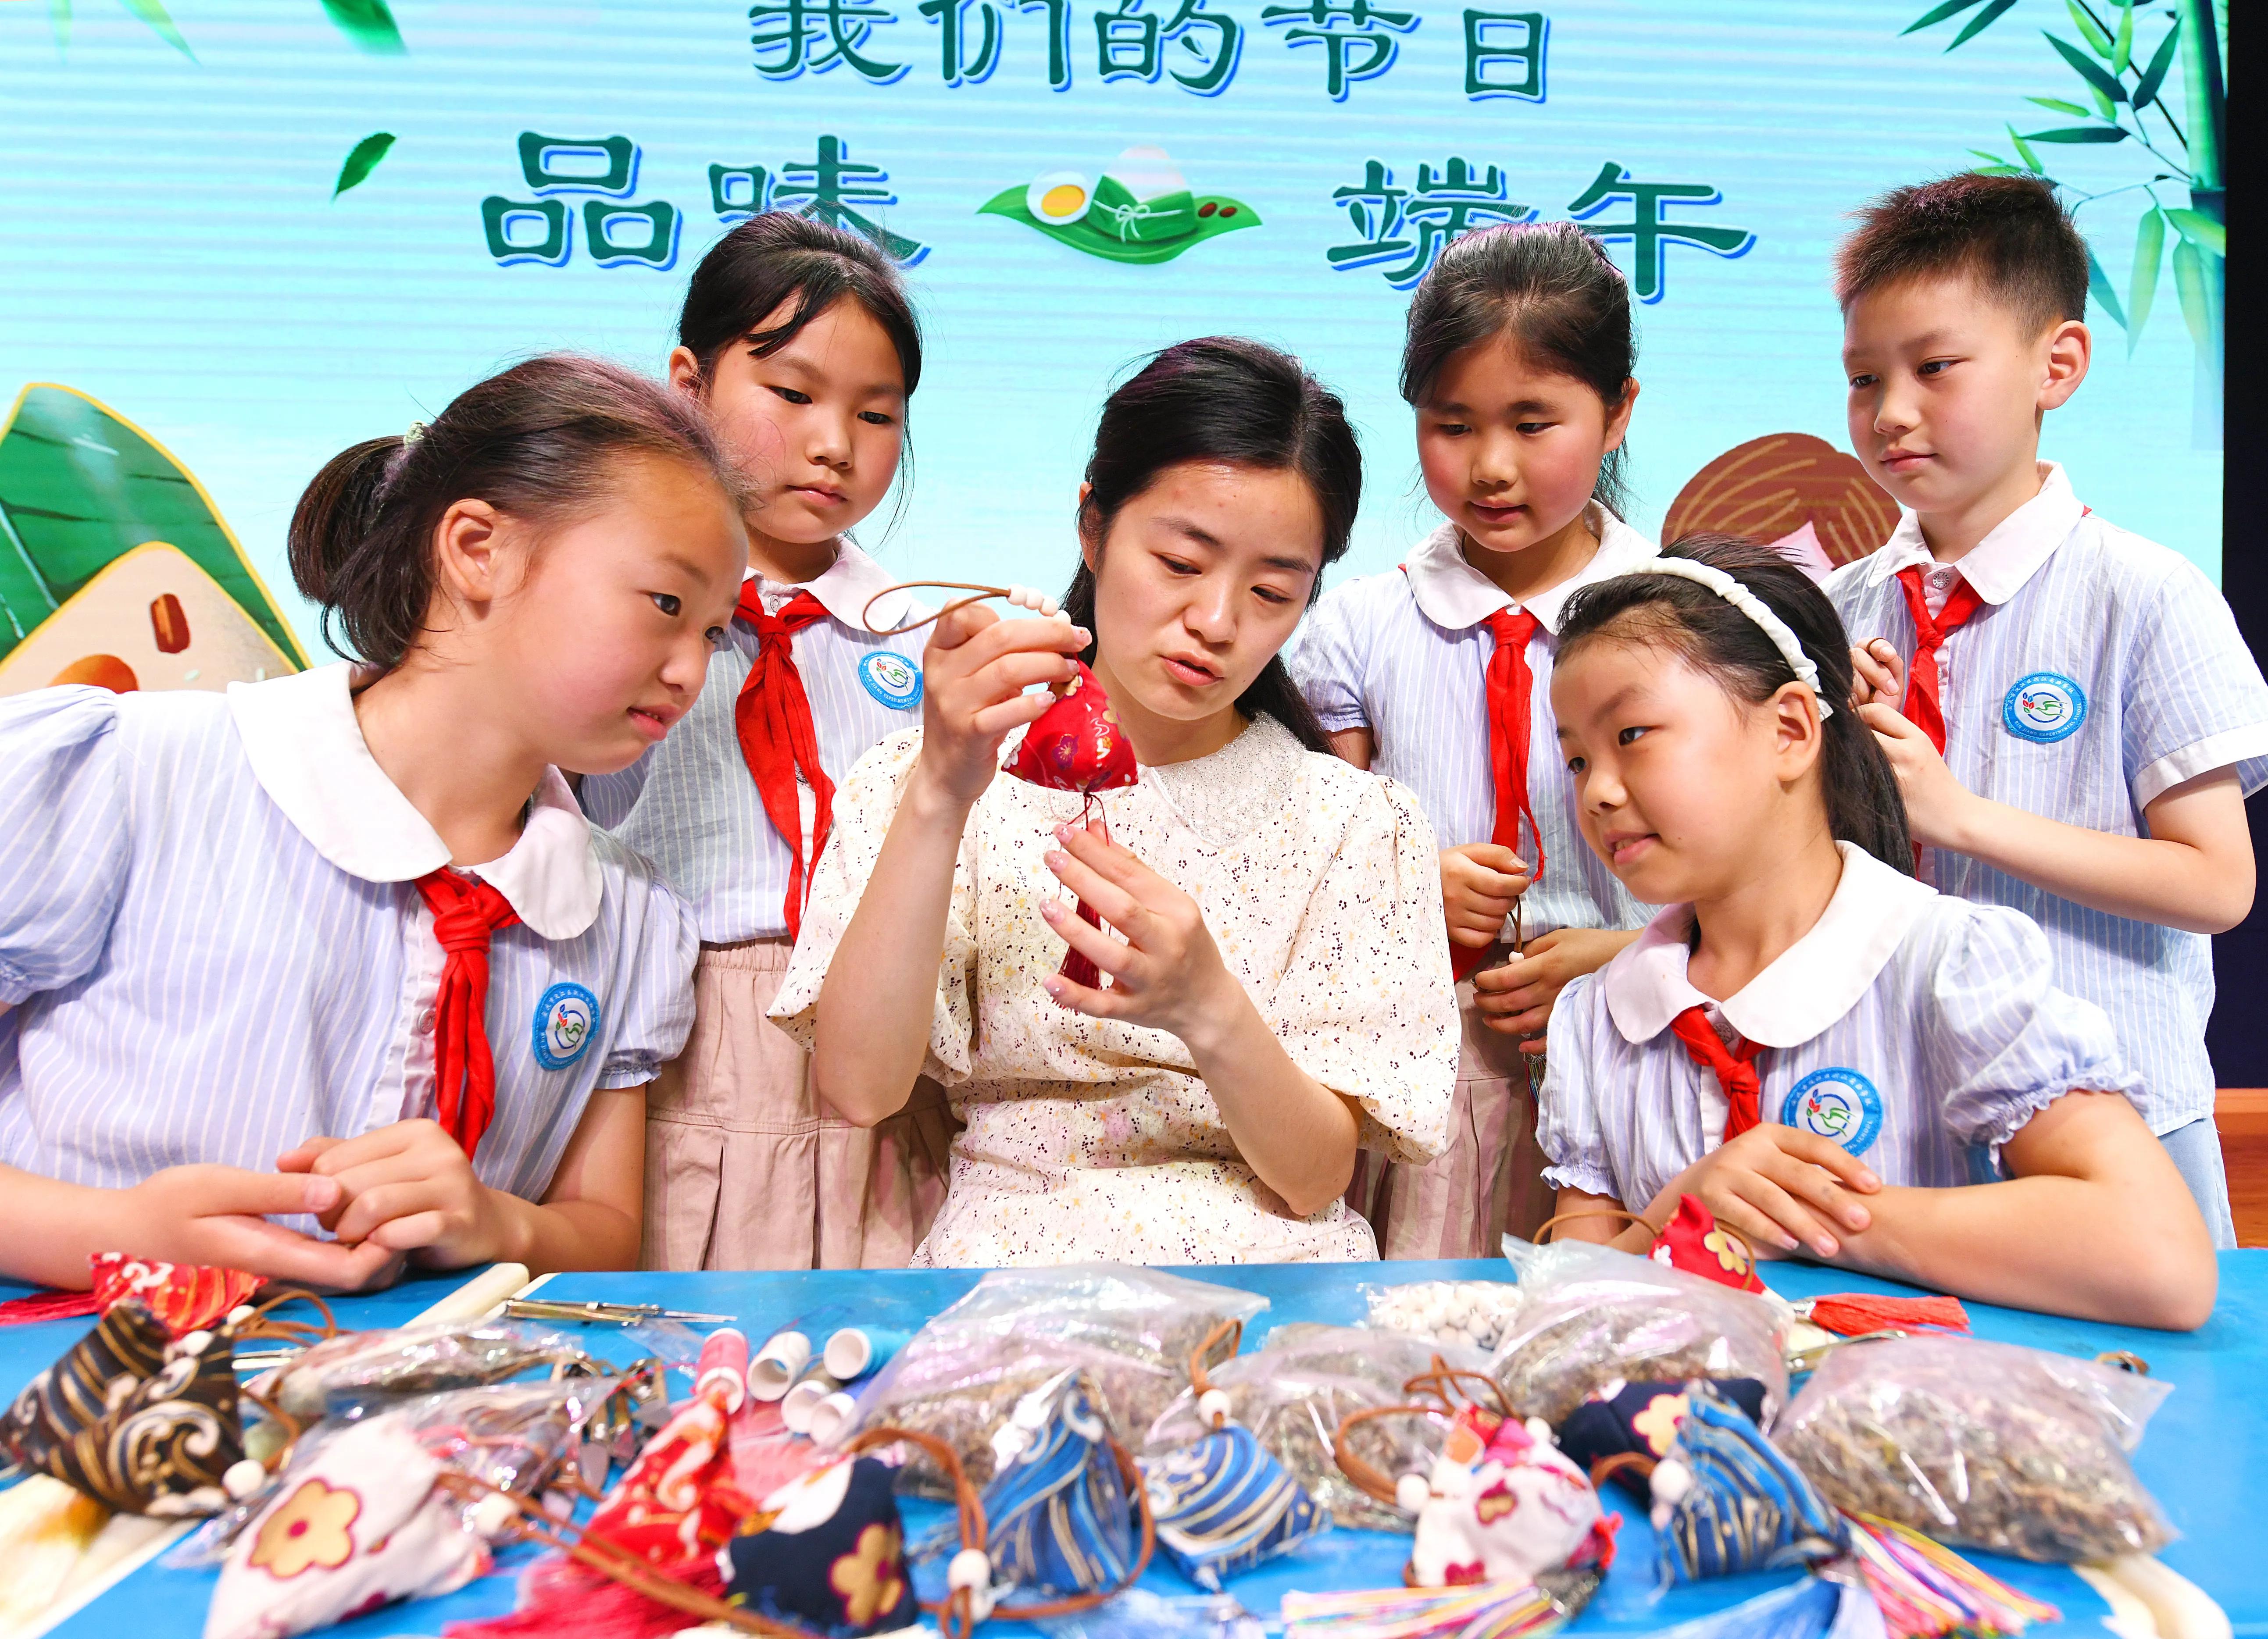 Аньцин в провинции Аньхой: дети, оставшиеся без родительского надзора, знакомятся с народными обычаями и культурой праздника Дуаньу